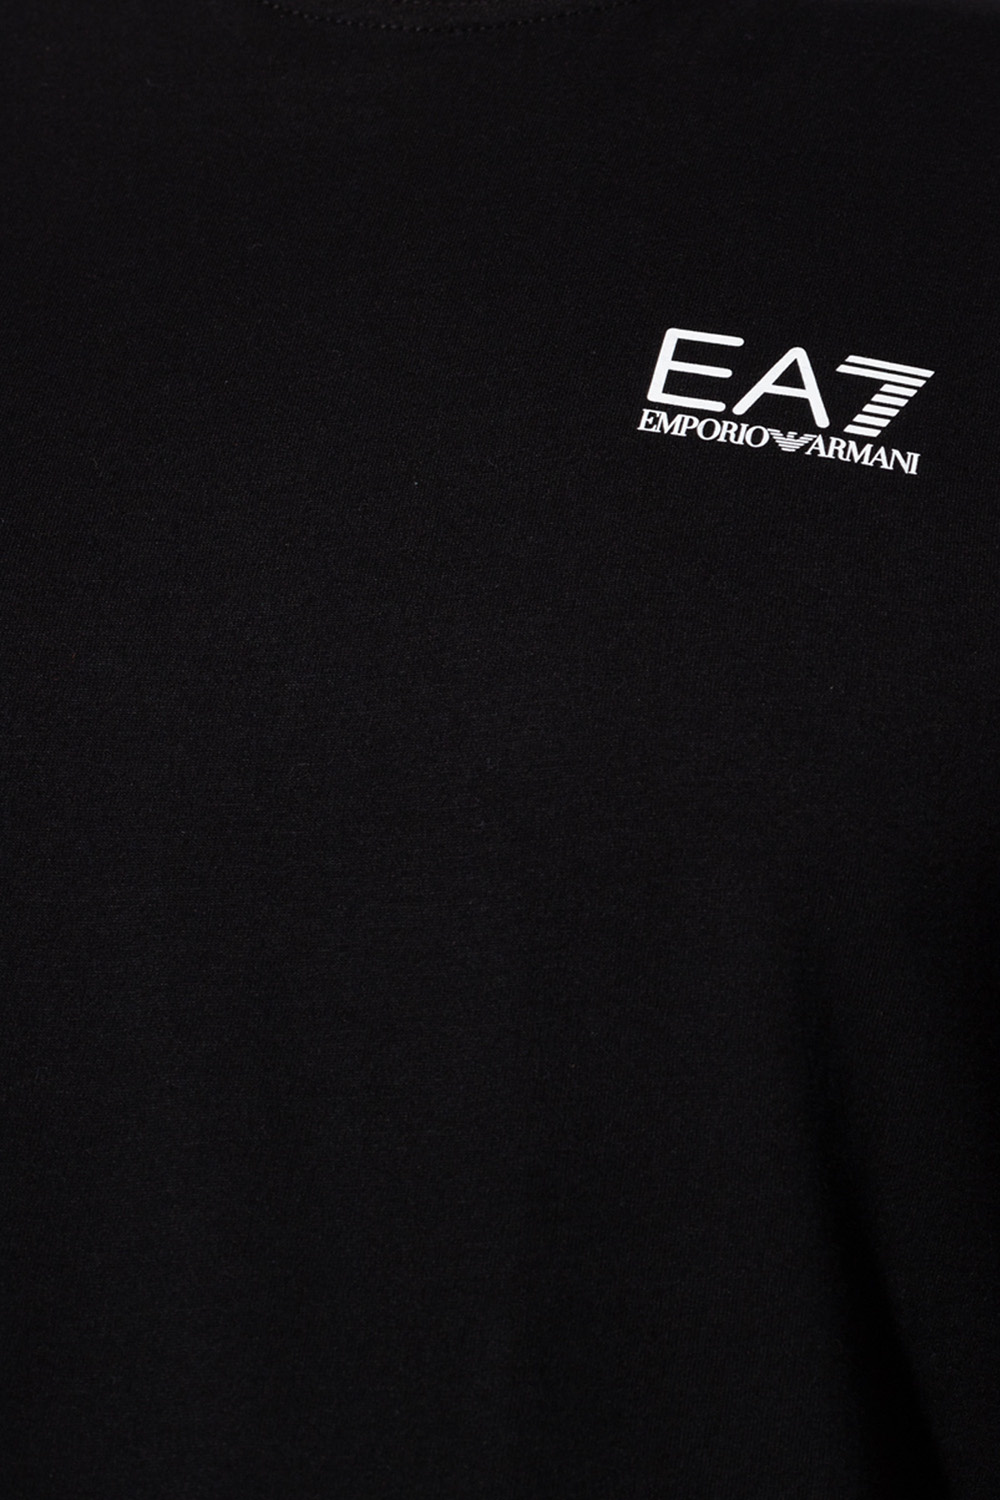 EA7 Emporio low-top armani Logo T-shirt